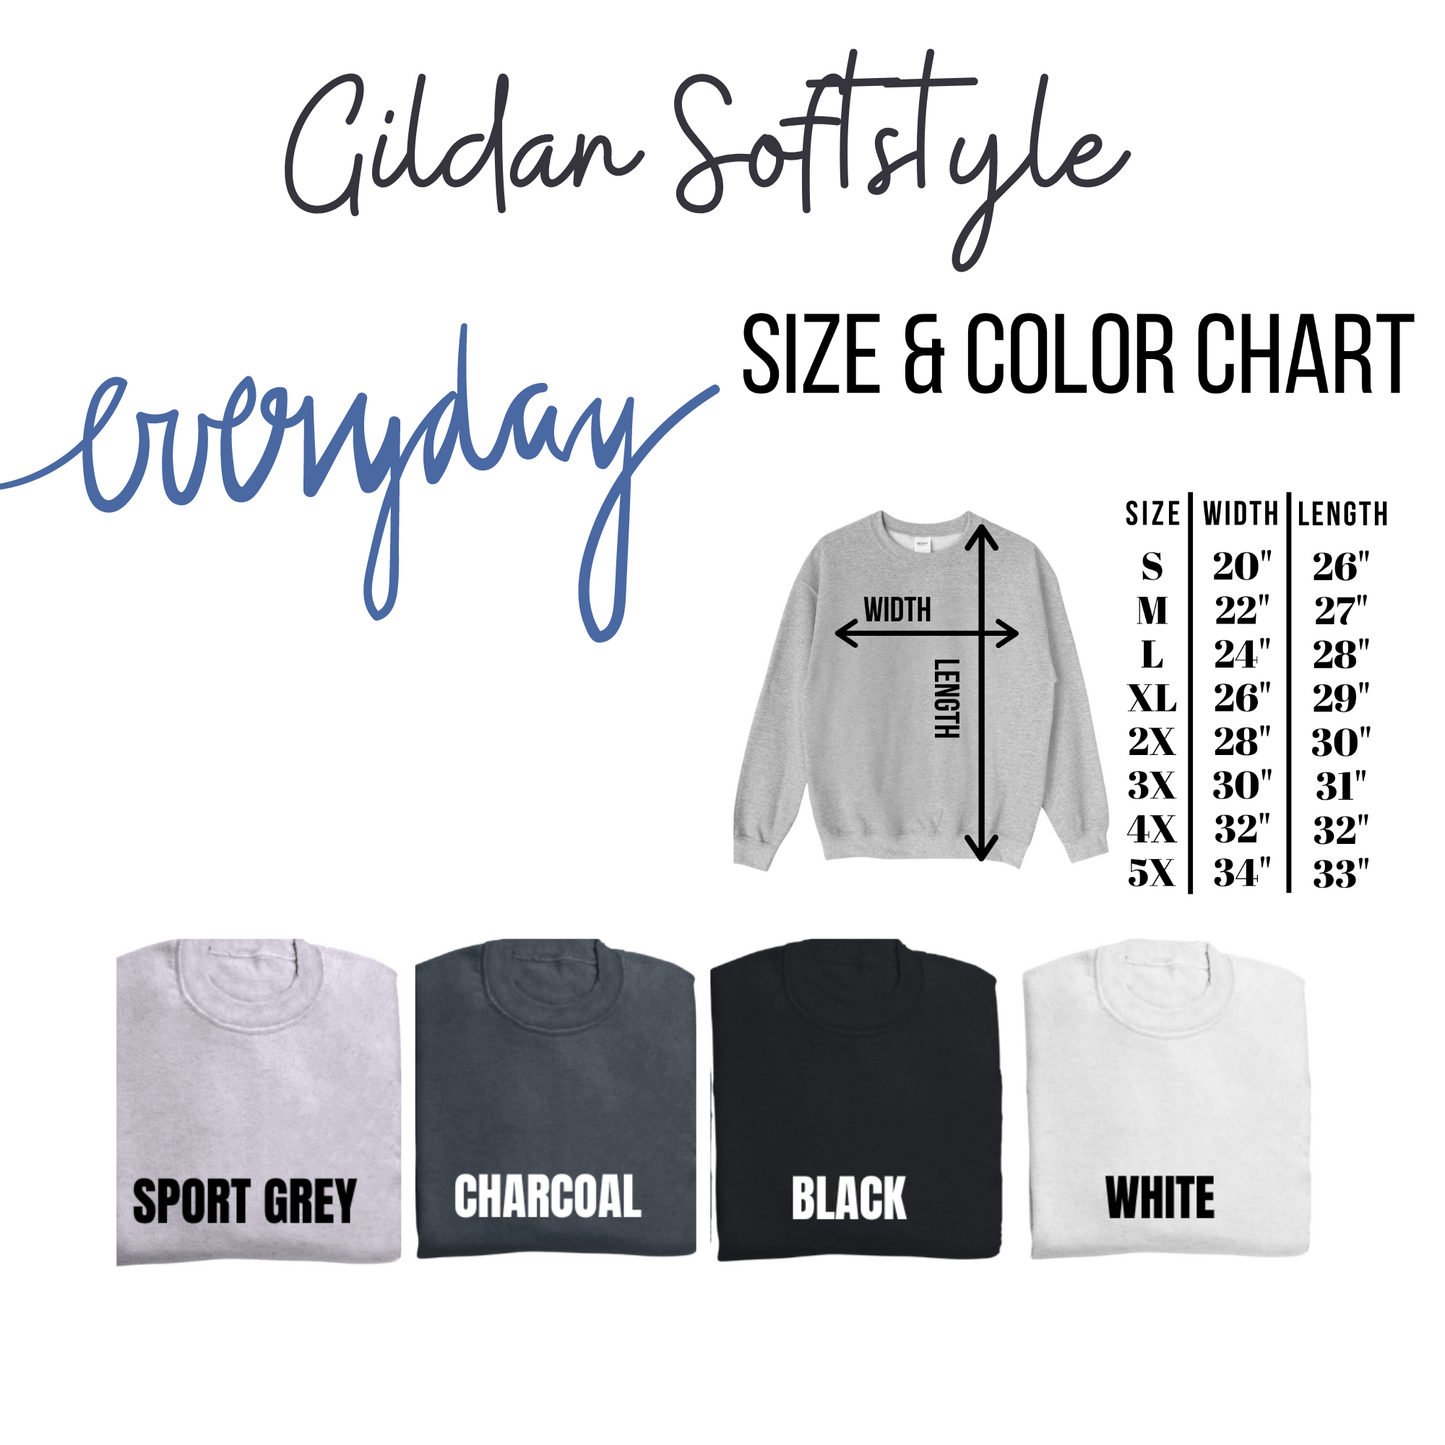 Ghost Doodle Gildan Softstyle Sweatshirt